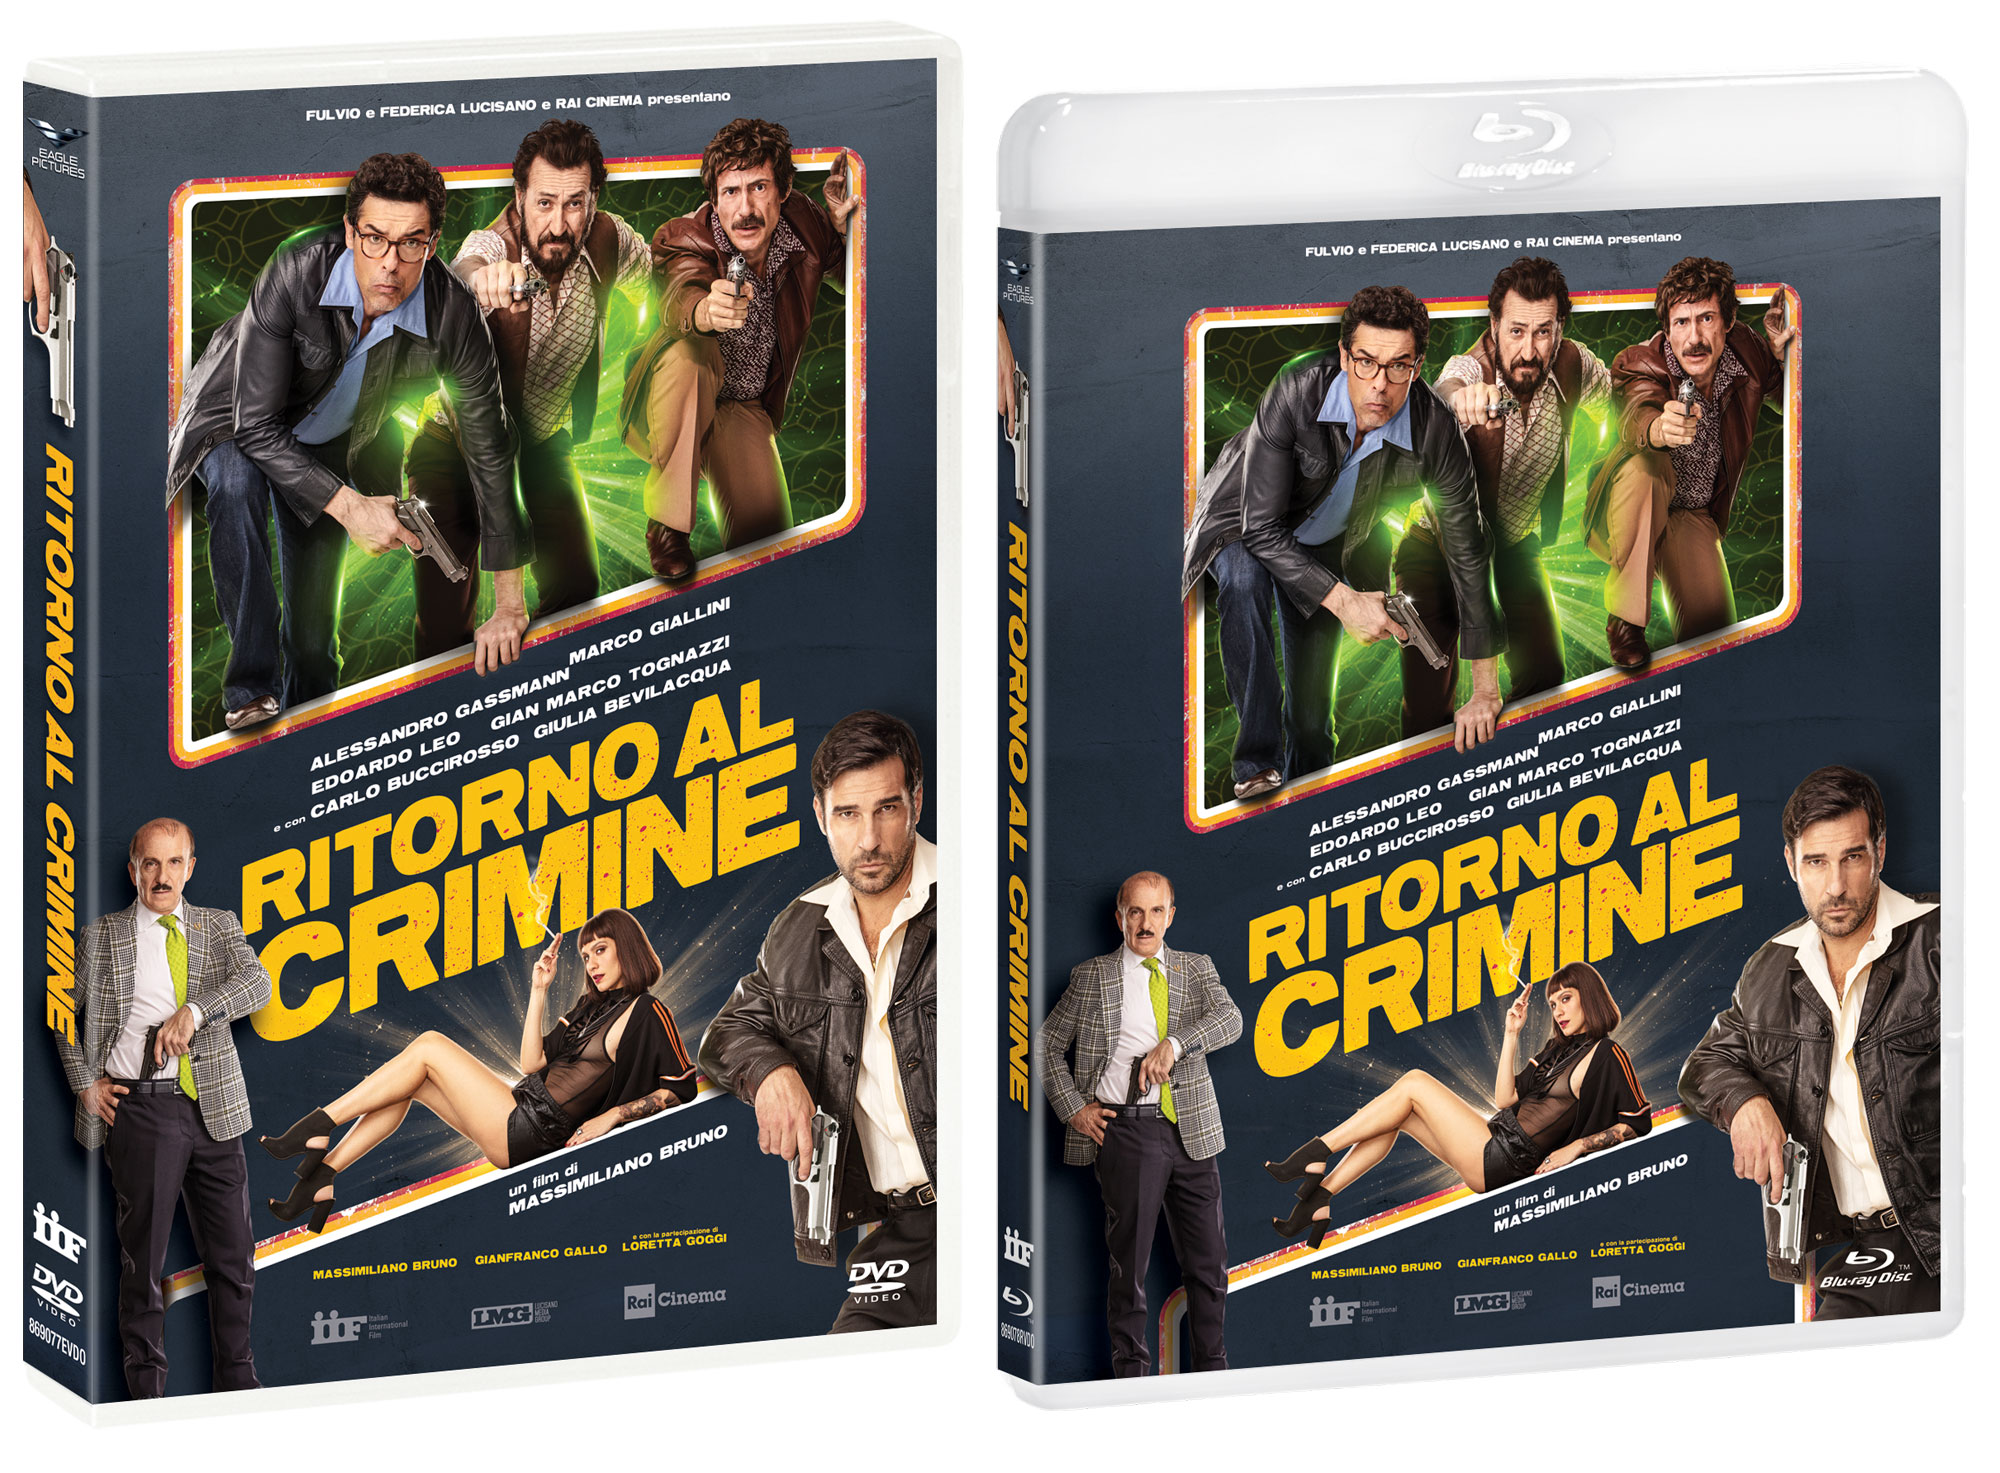 Ritorno al Crimine in DVD e Blu-ray il film italiano